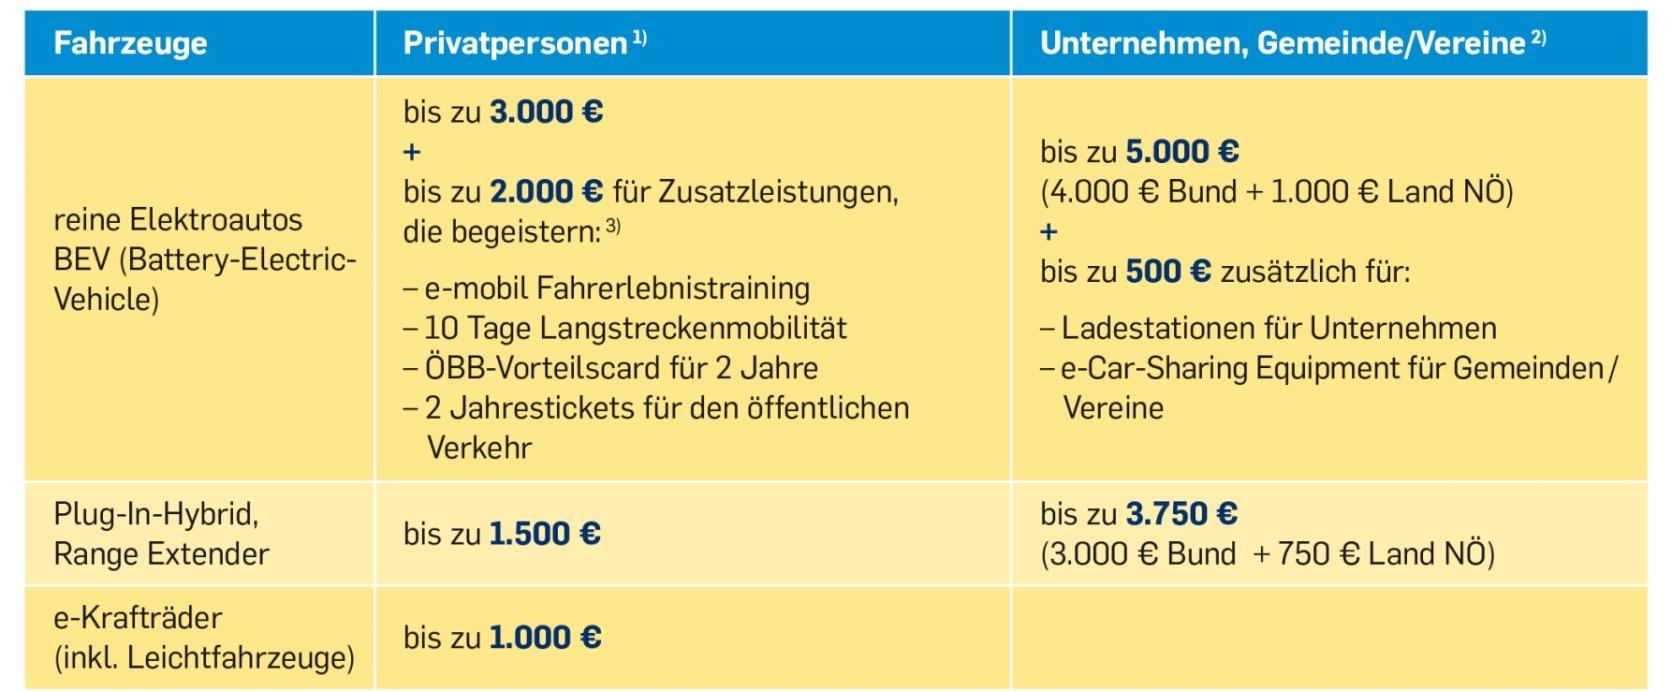 Förderungen in Niederösterreich 1) Anschaffungskosten über 47.